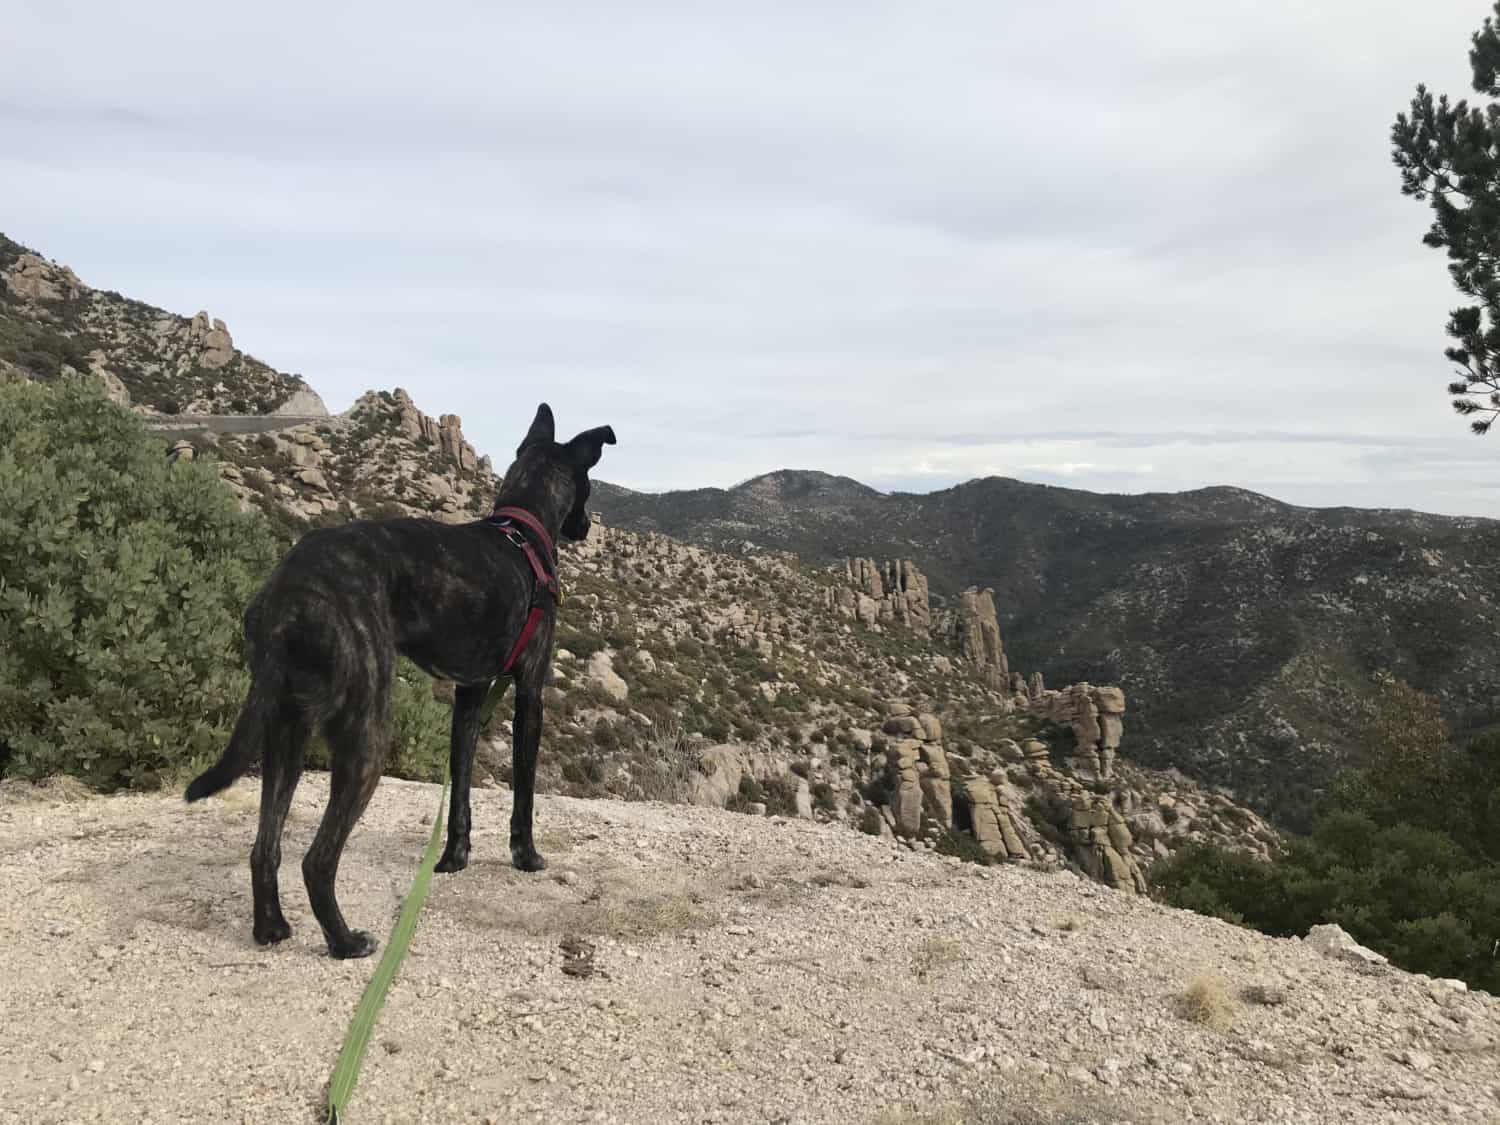 Brindle dog overlooking desert landscape